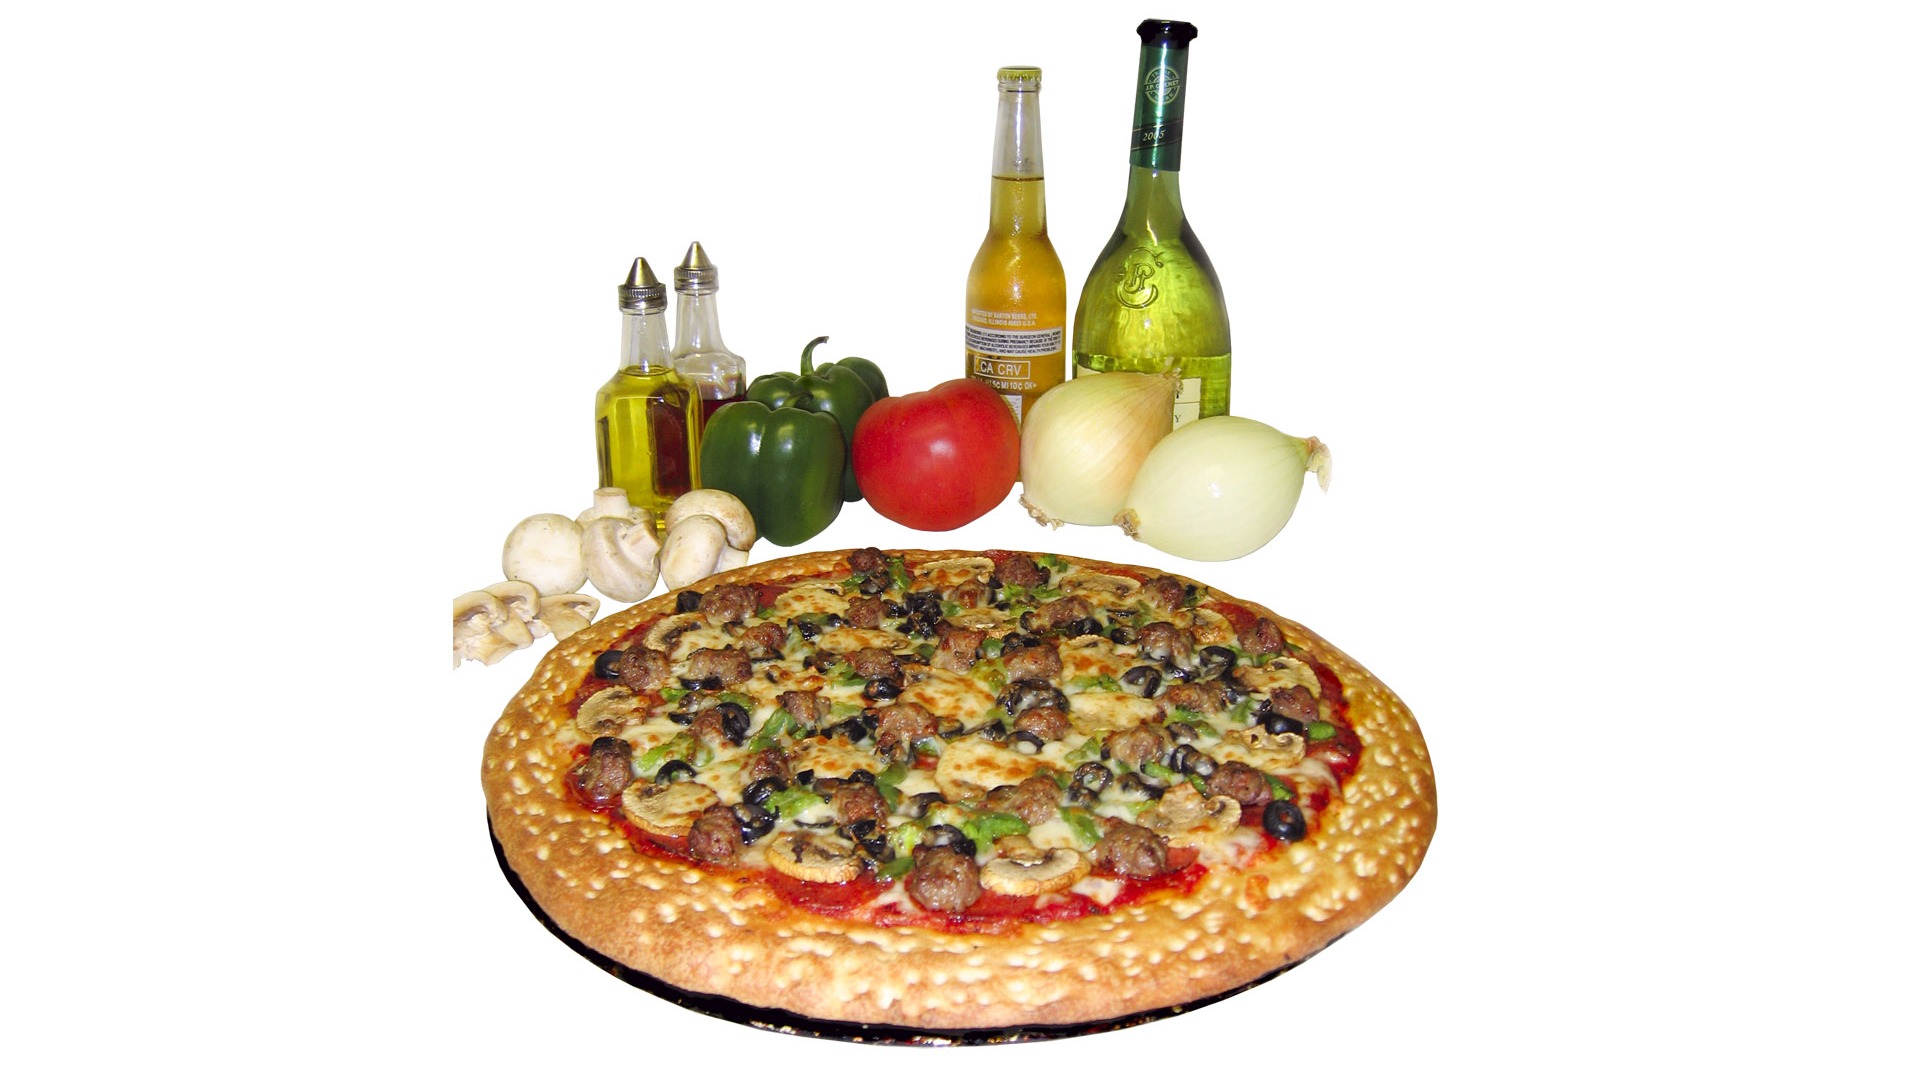 Fondos de pizzerías de Alimentos (3) #11 - 1920x1080